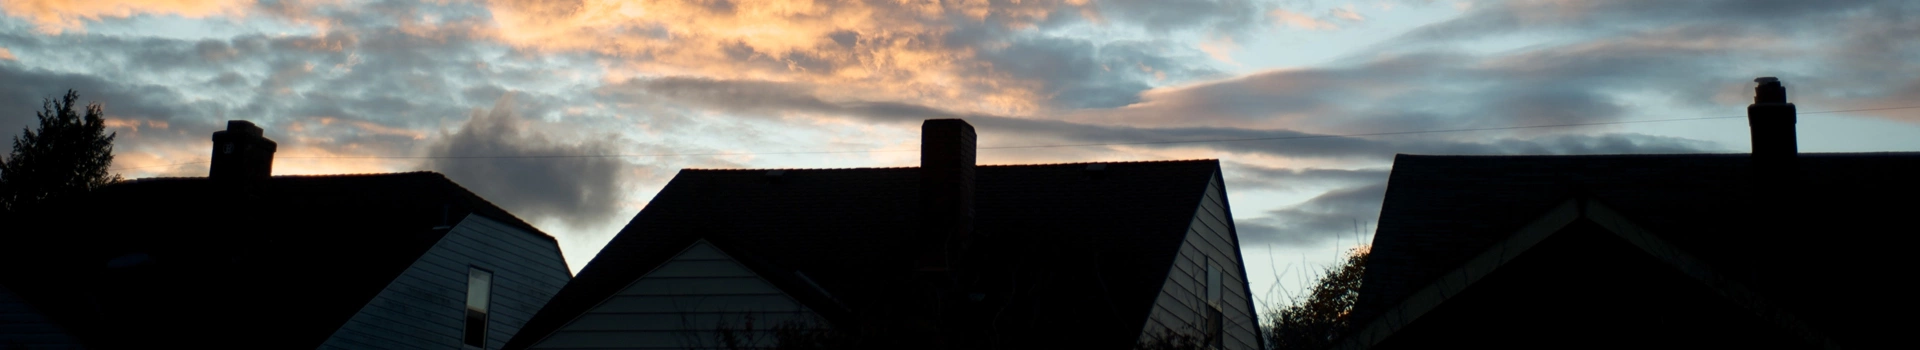 trzy dachy z kominami na tle zachodzącego słońca